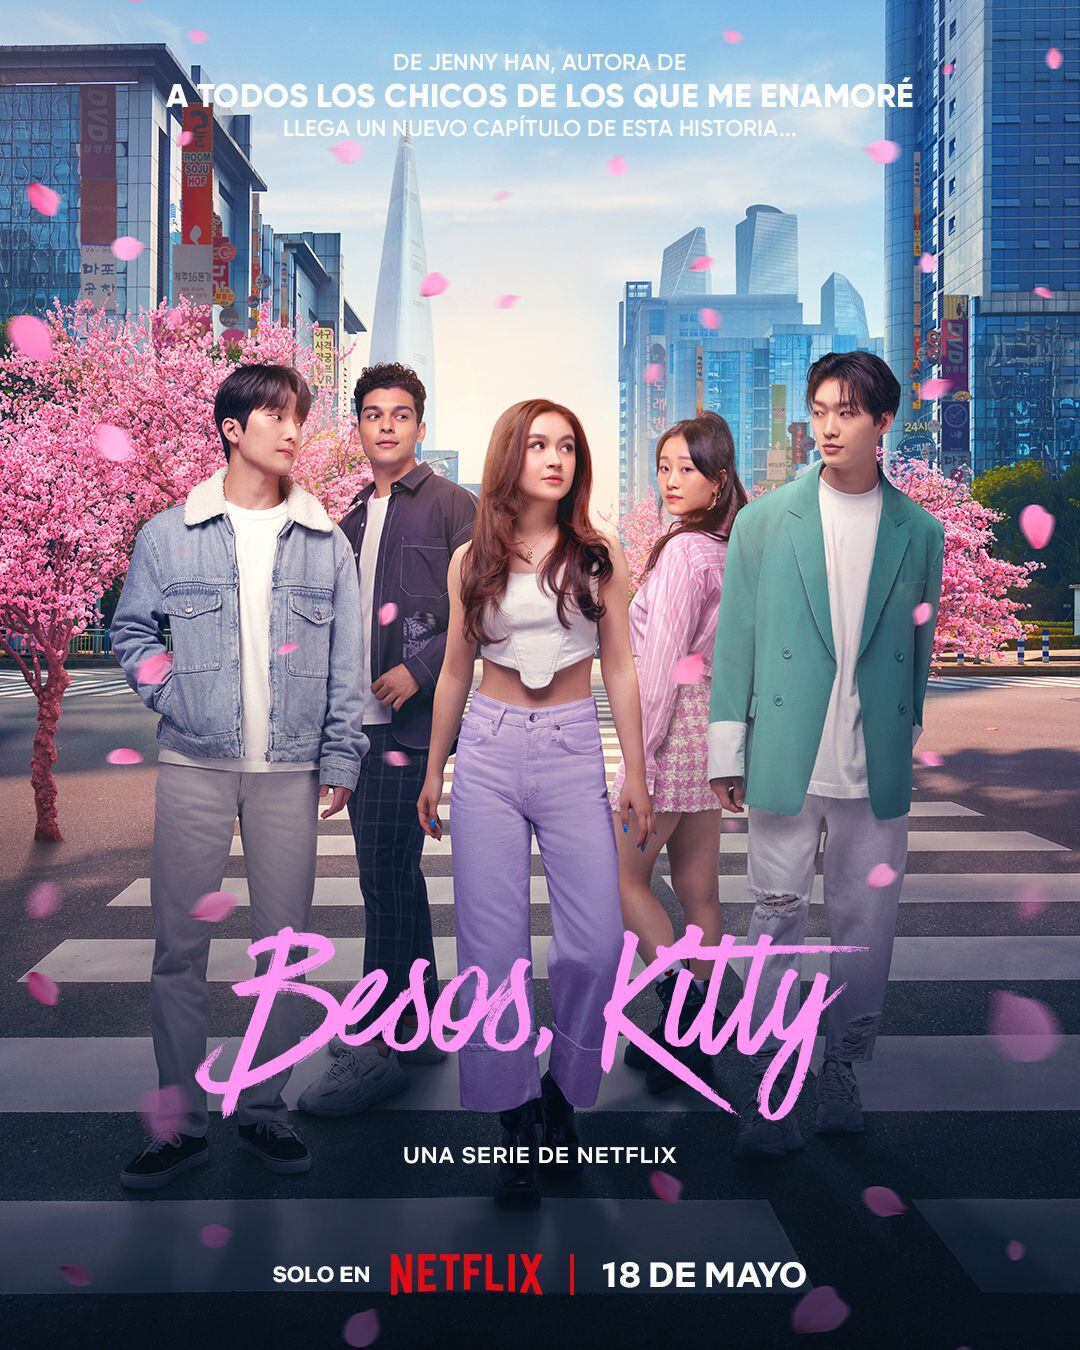 "Besos, Kitty" enfrenta una recepción fría por parte de la audiencia coreana, quienes expresan su insatisfacción ante la falta de conexión de la serie con las expectativas culturales y sociales del país.